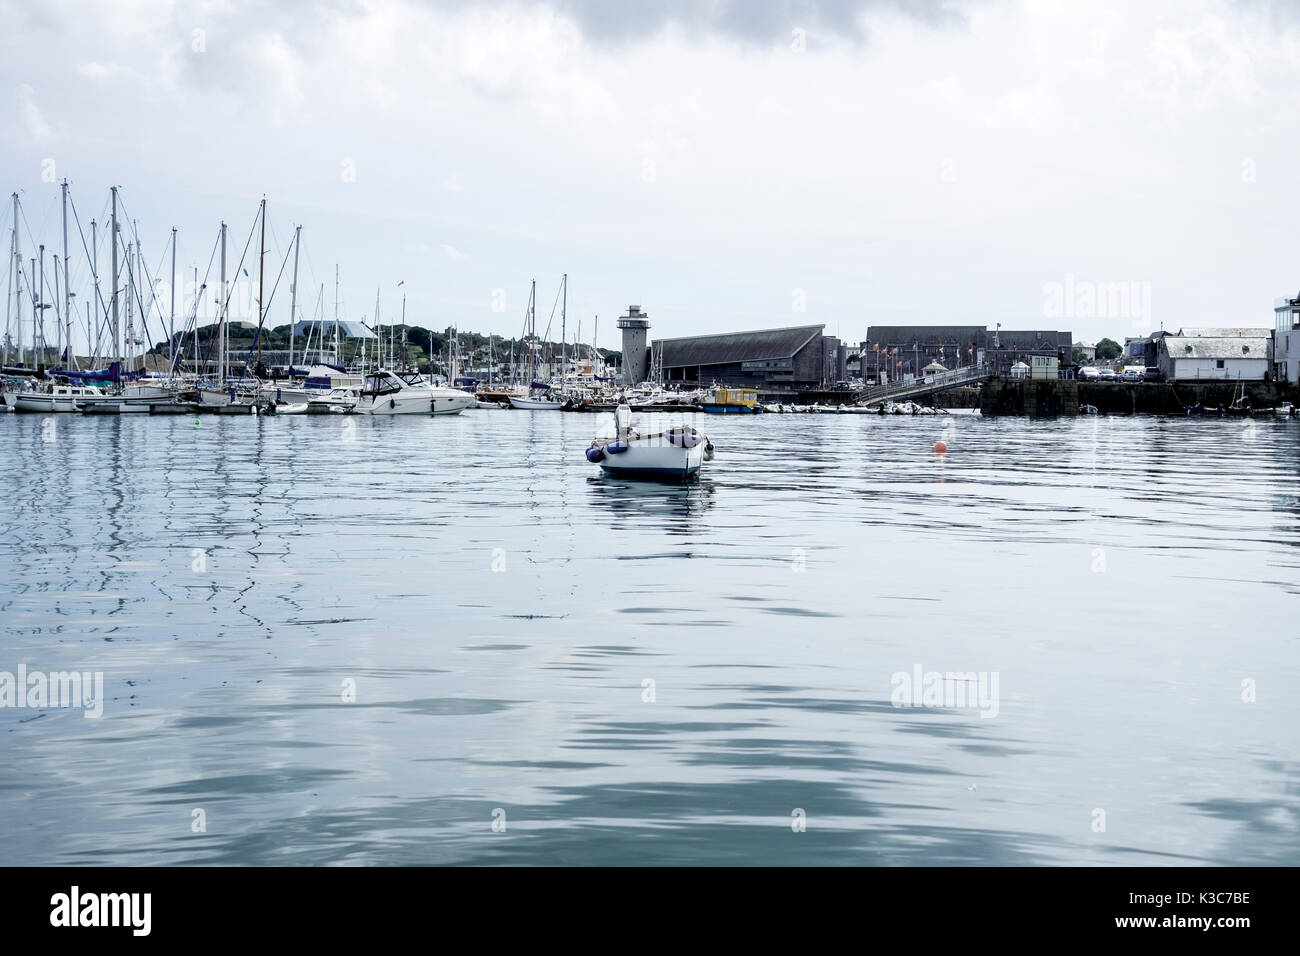 Blick auf den Hafen von Falmouth, ein tiefes Wasser vertäuen und Freizeitaktivitäten yacht Marina, auf einem klaren und ruhigen Wetter Tag. Stockfoto